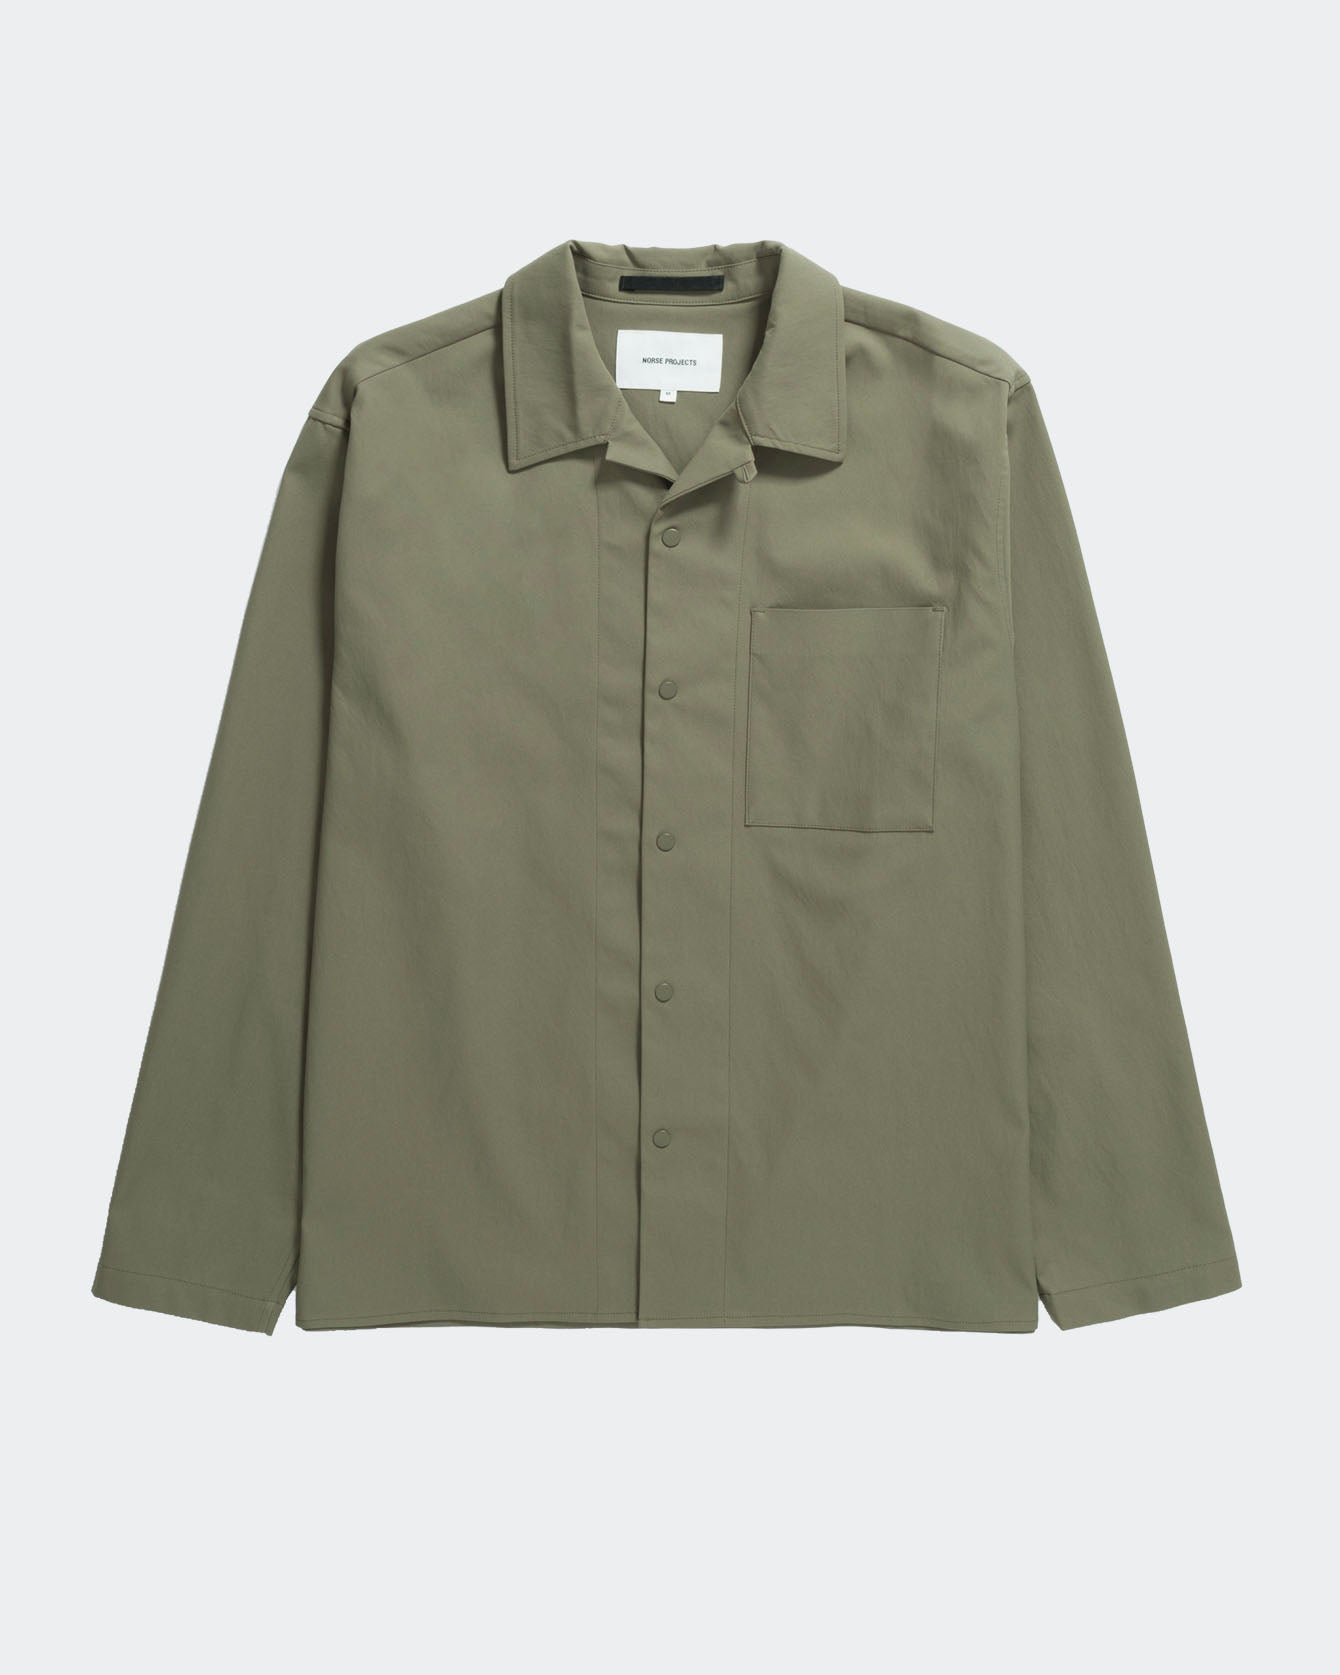 Carston Solotex Twill Shirt Ls Sediment Green